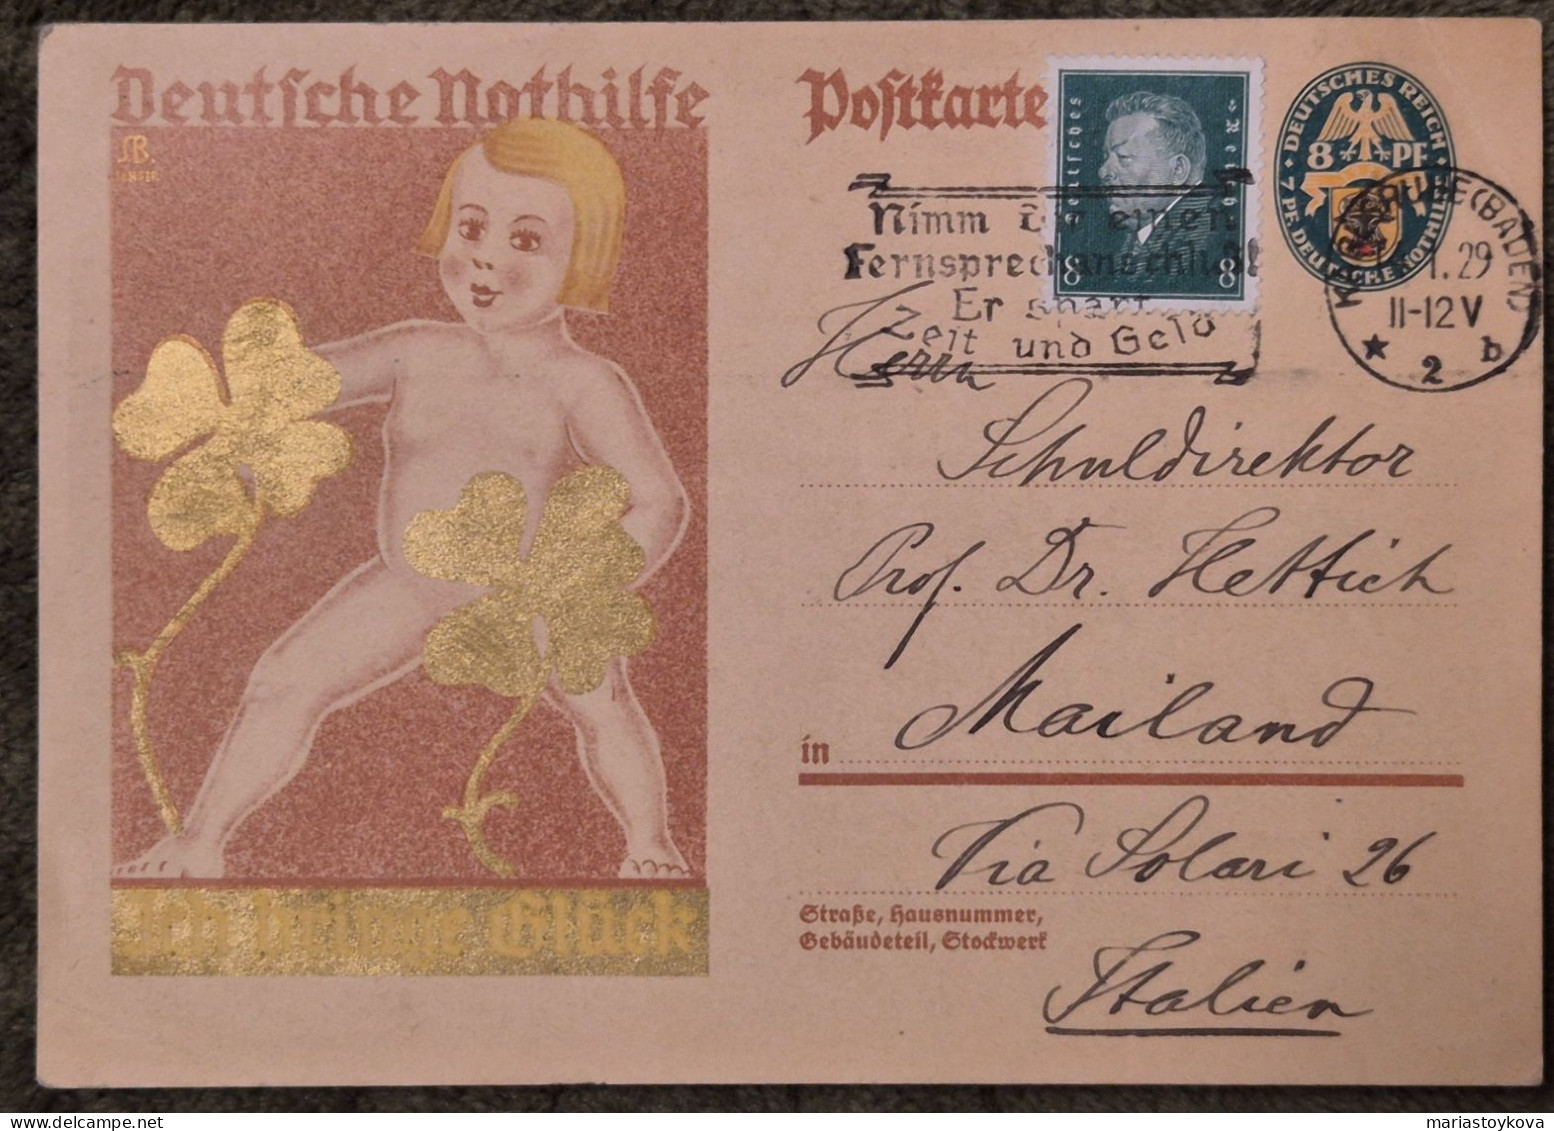 1929.Aus Karlsruhe Nach Mailand. Deutsche Nothilfe, Ich Bringe Glück, 8 Pfennig - Cartes Postales